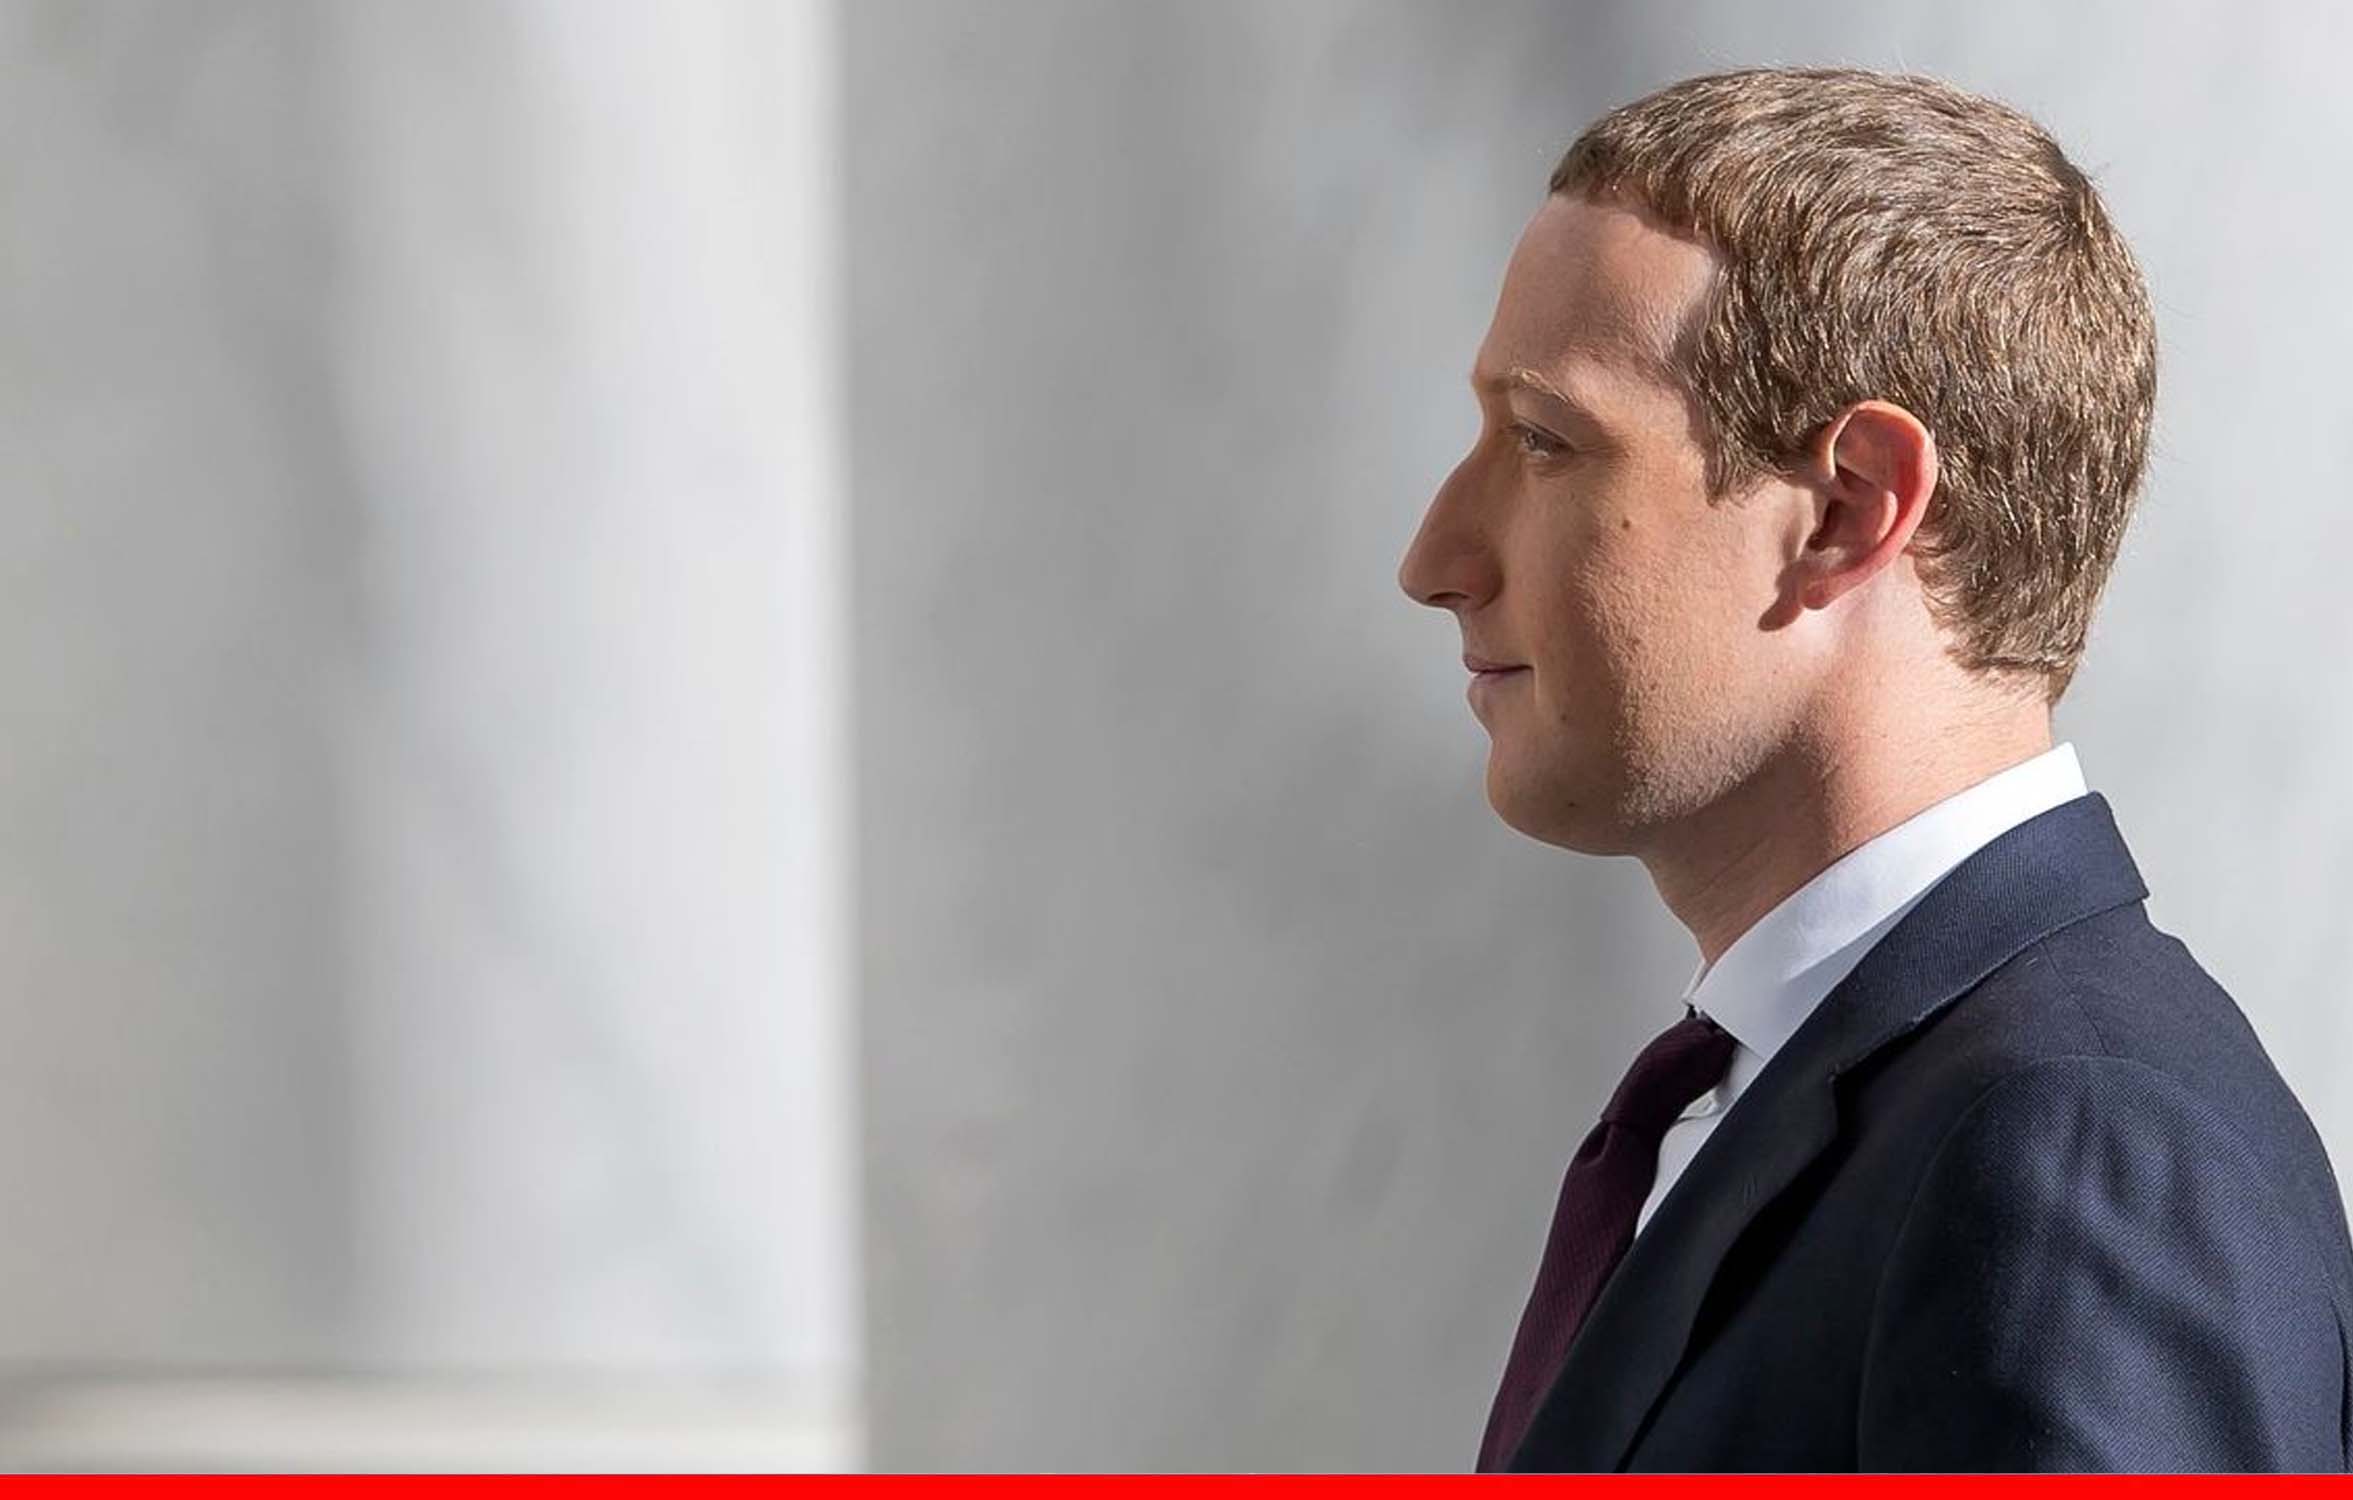 फेसबुक ठप्प होने से मार्क जकरबर्ग को हुआ नुकसान, कुछ घंटों में गंवाए 600 करोड़ डॉलर